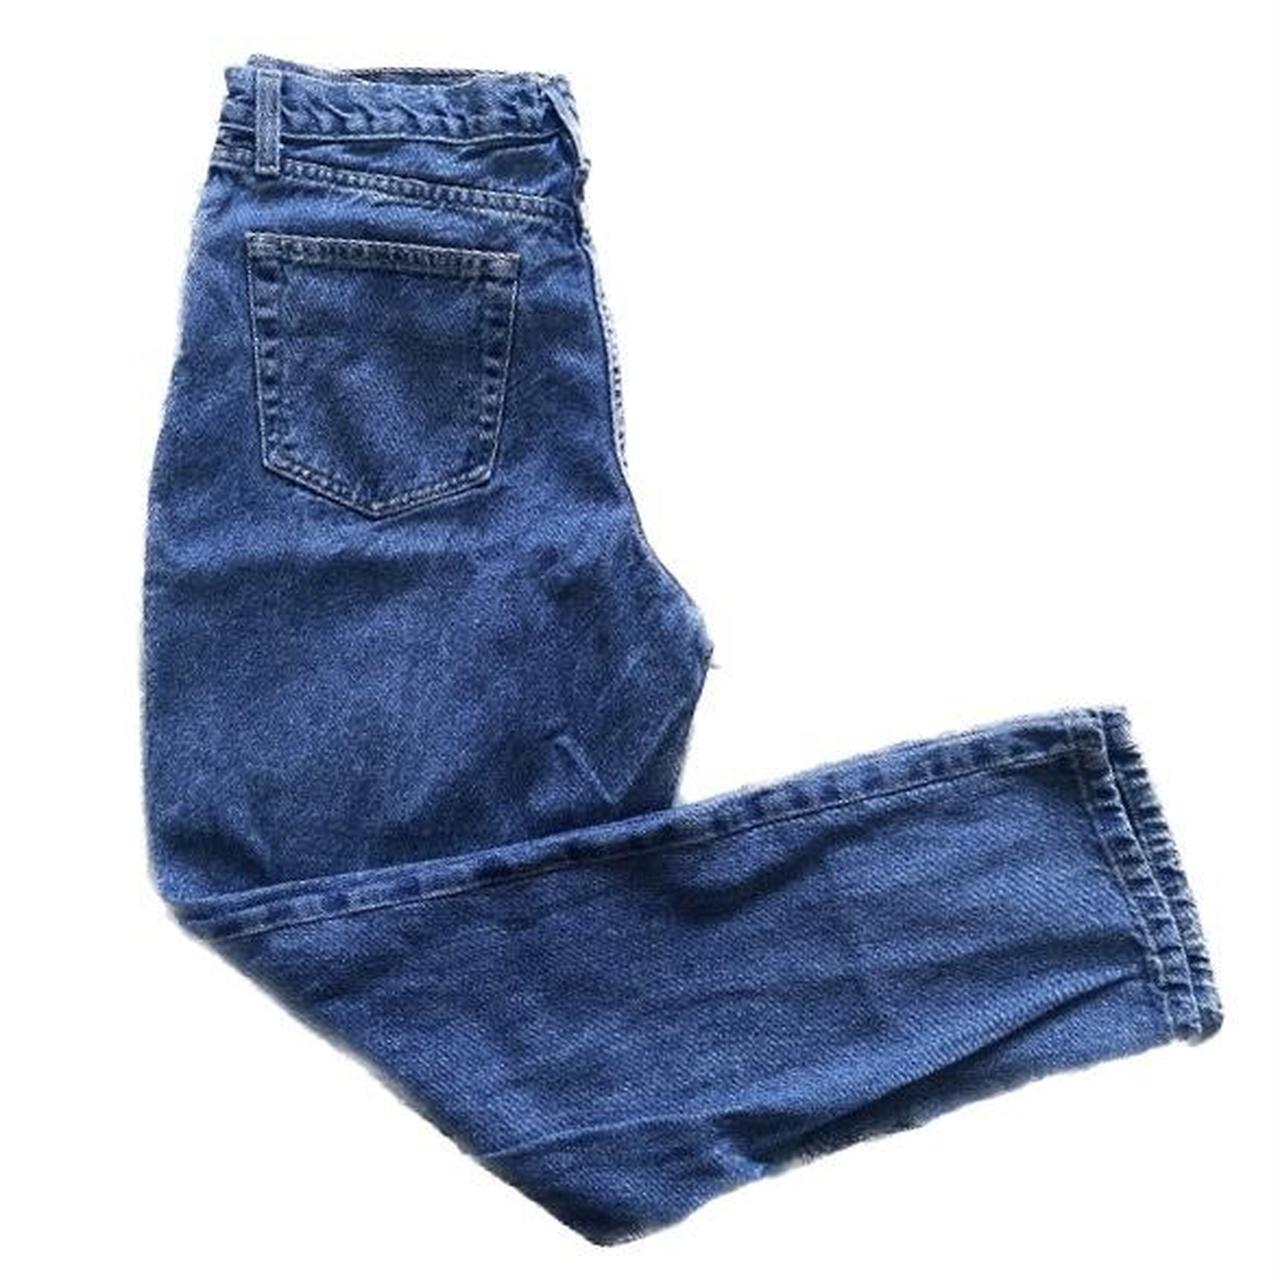 High Sierra Women's Blue Jeans